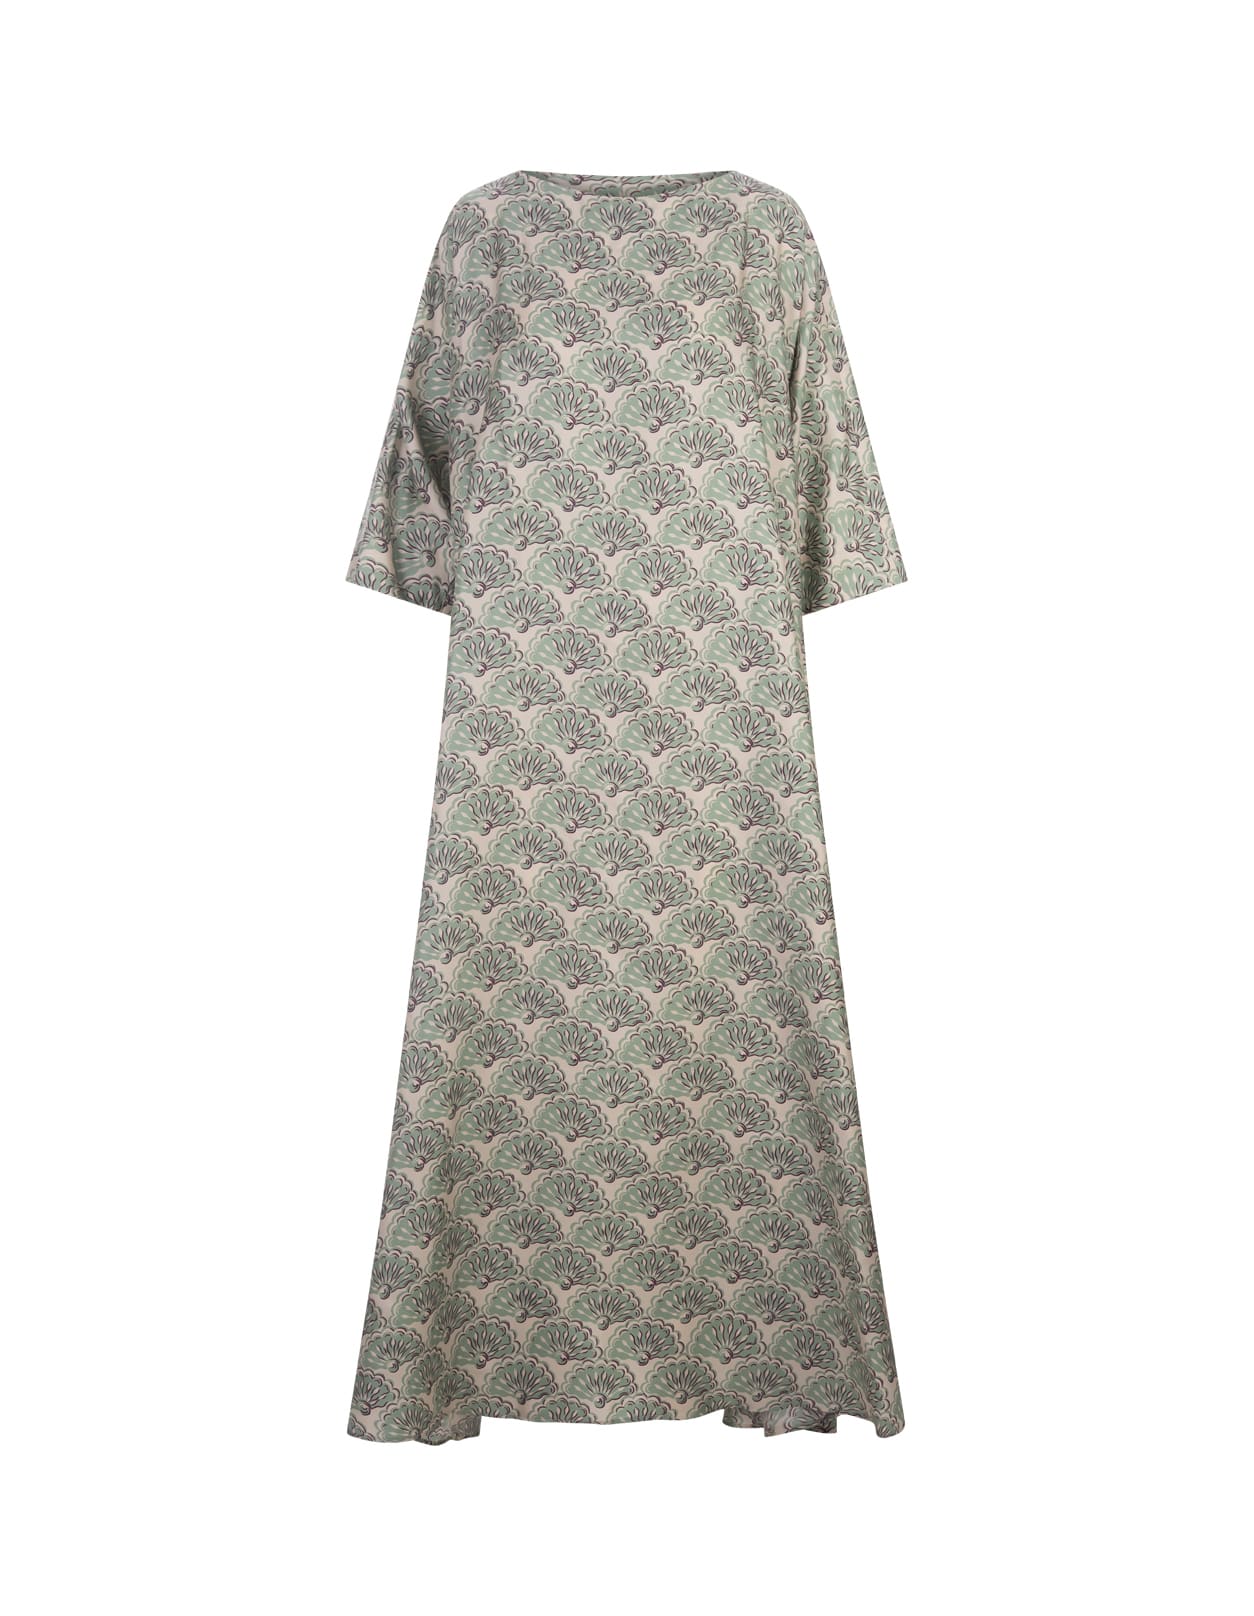 Muumuu Dress With Round Neck In Fans Mint Silk Twill